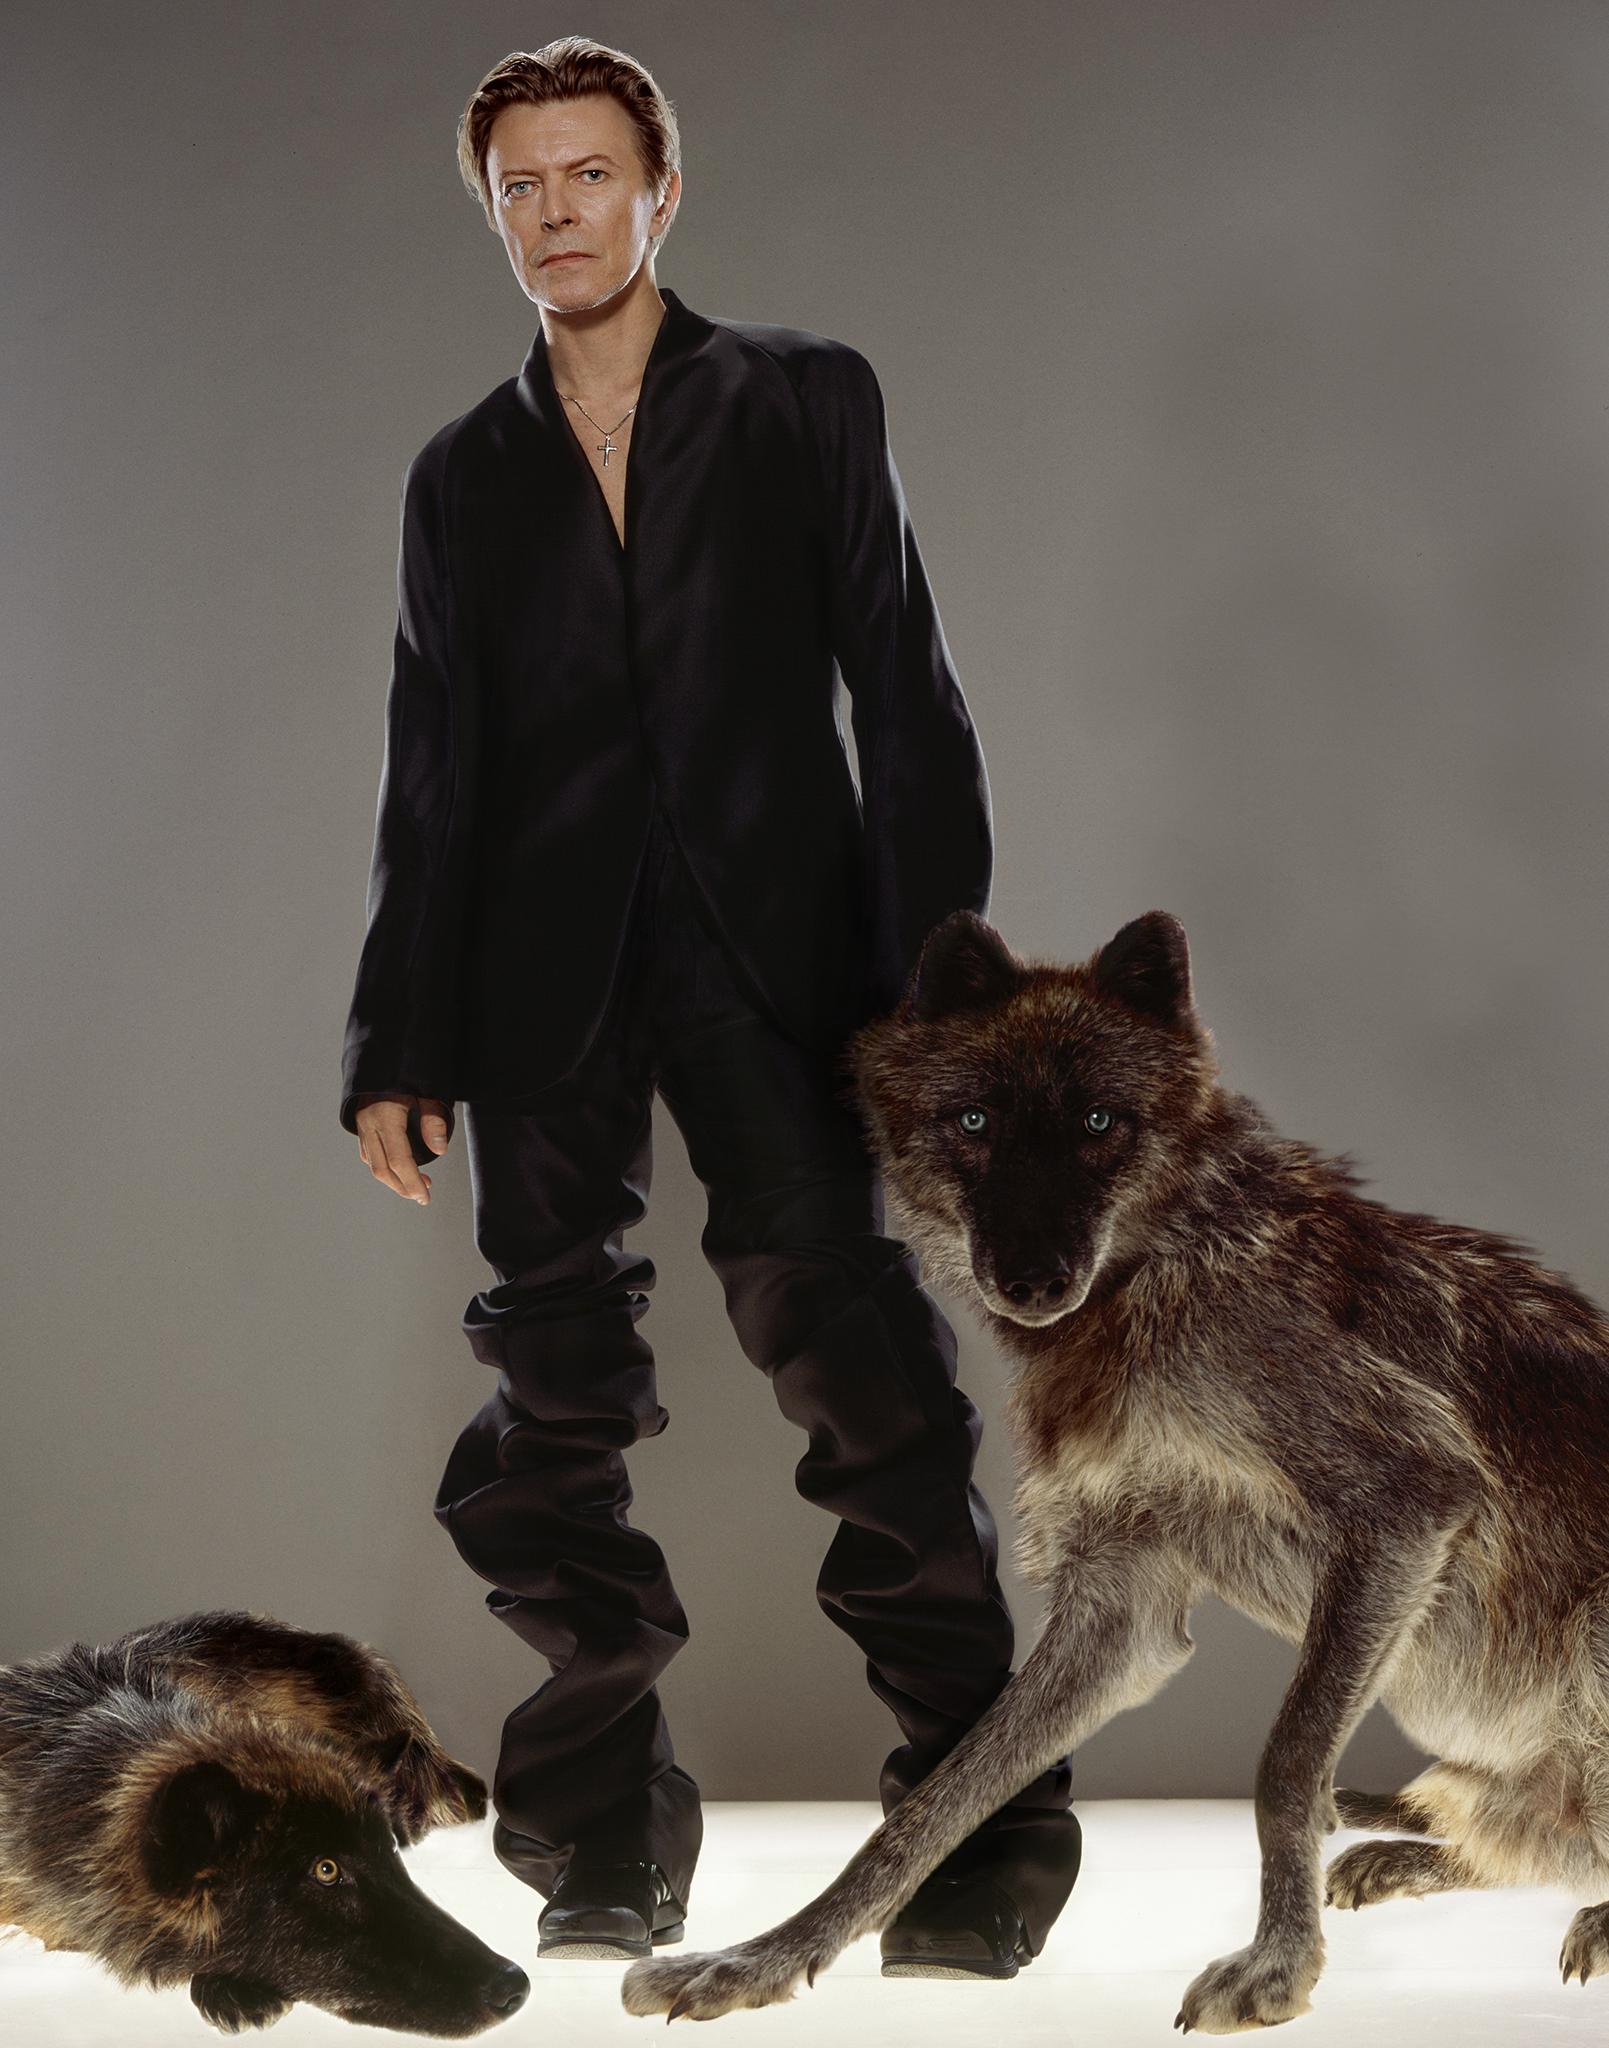 Kunstdruck in Museumsqualität von David Bowie des Fotografen Markus Klinko aus seiner gefeierten Kollektion "Bowie Unseen", die 2016 zum ersten Mal veröffentlicht wurde.

Diese atemberaubende Aufnahme von David Bowie mit einem Wolf stammt von einem